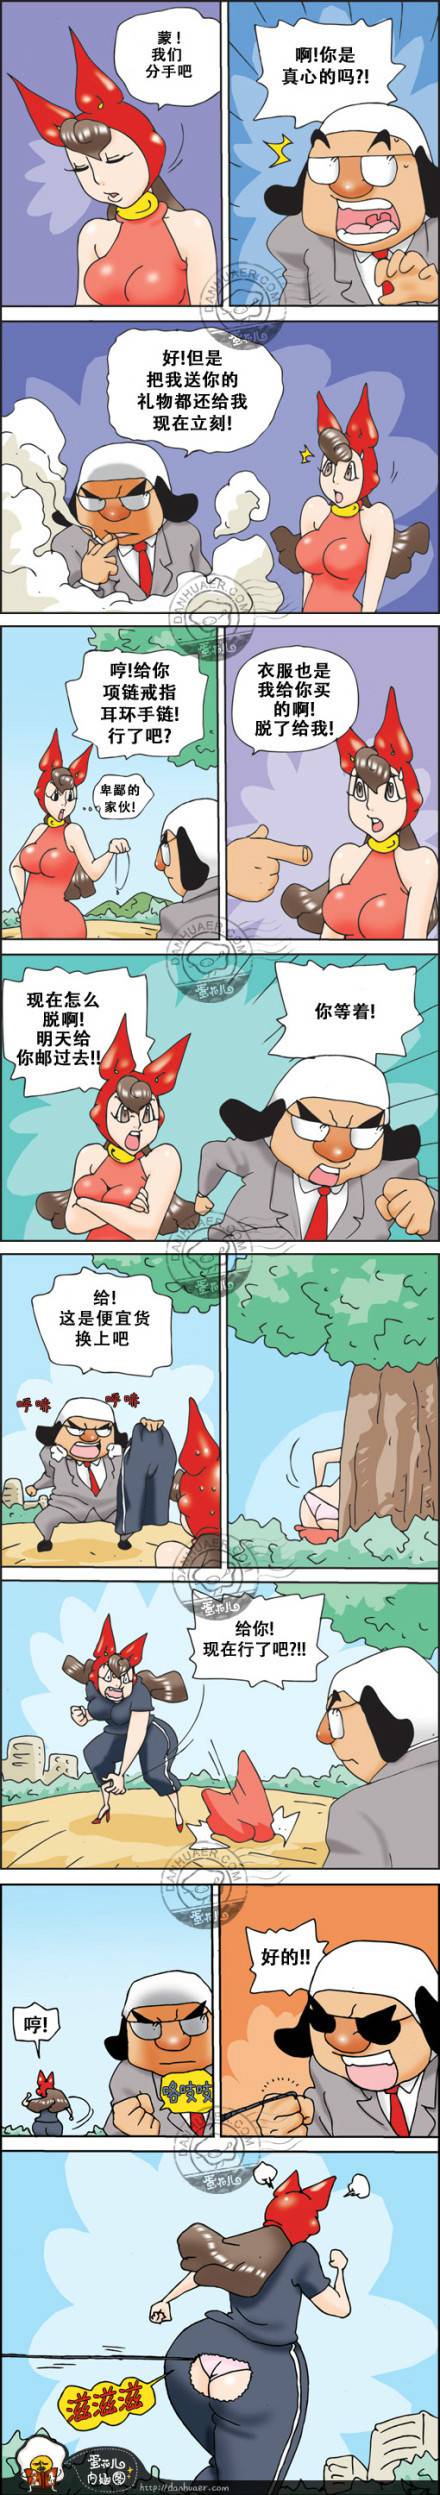 邪恶漫画爆笑囧图第238刊：妻子的习惯